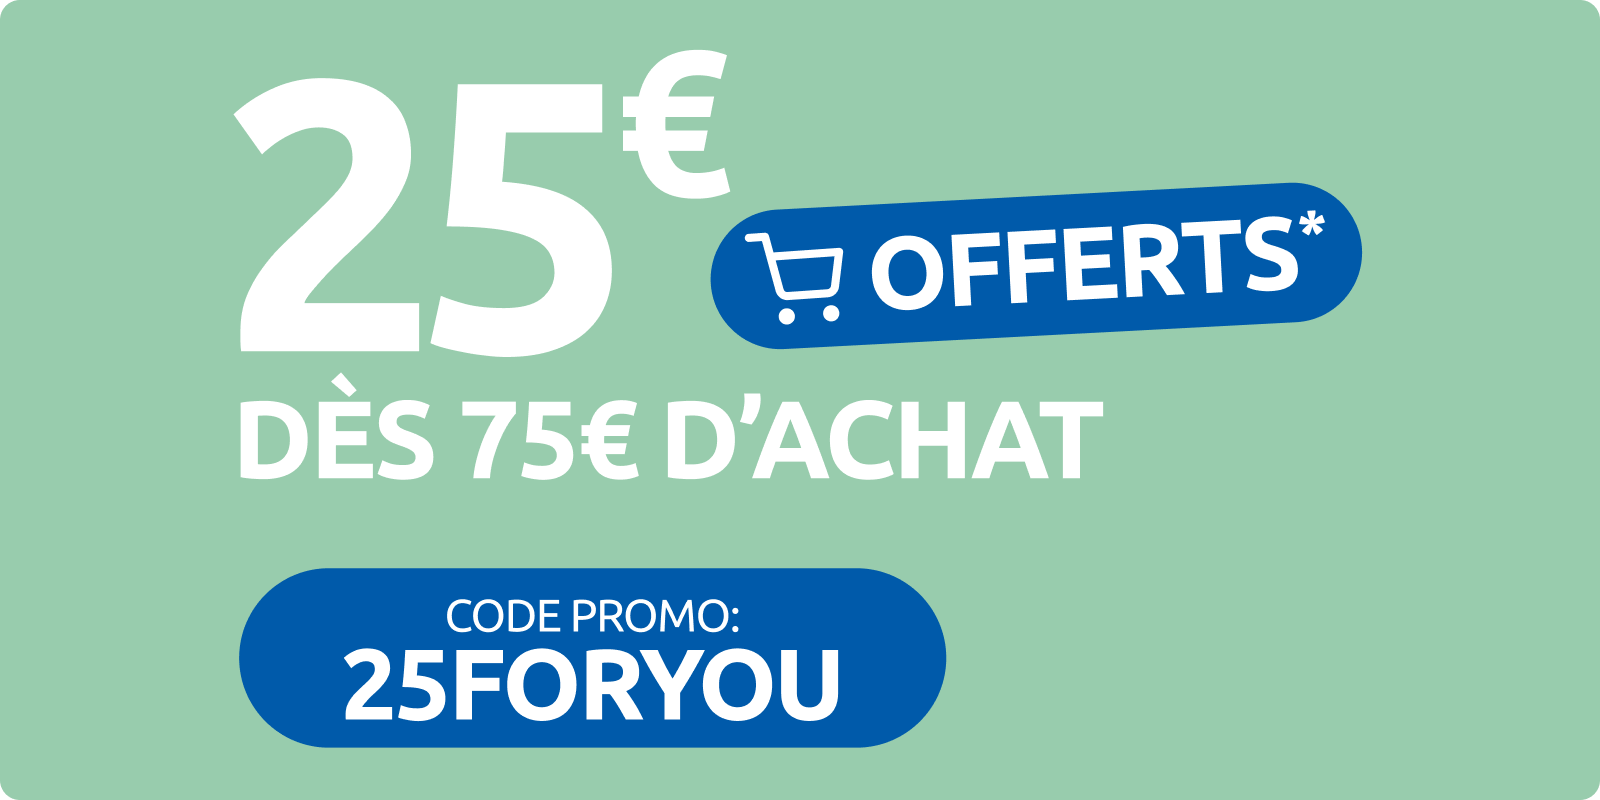 25€ offerts sur votre première commande dès 75€ d’achats en ligne. Avec le code promo 25FORYOU